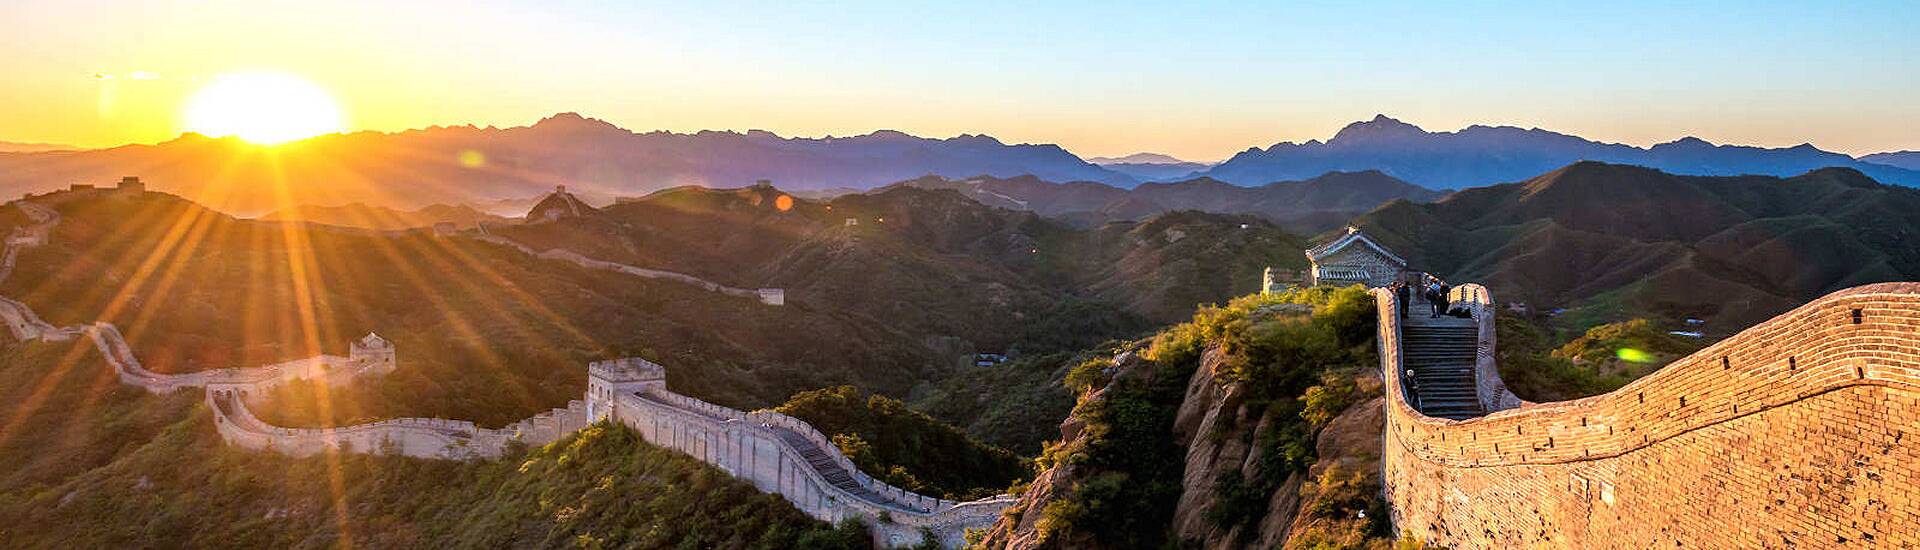 Bild der imposanten Großen Mauer von China, die sich majestätisch über die Berge erstreckt